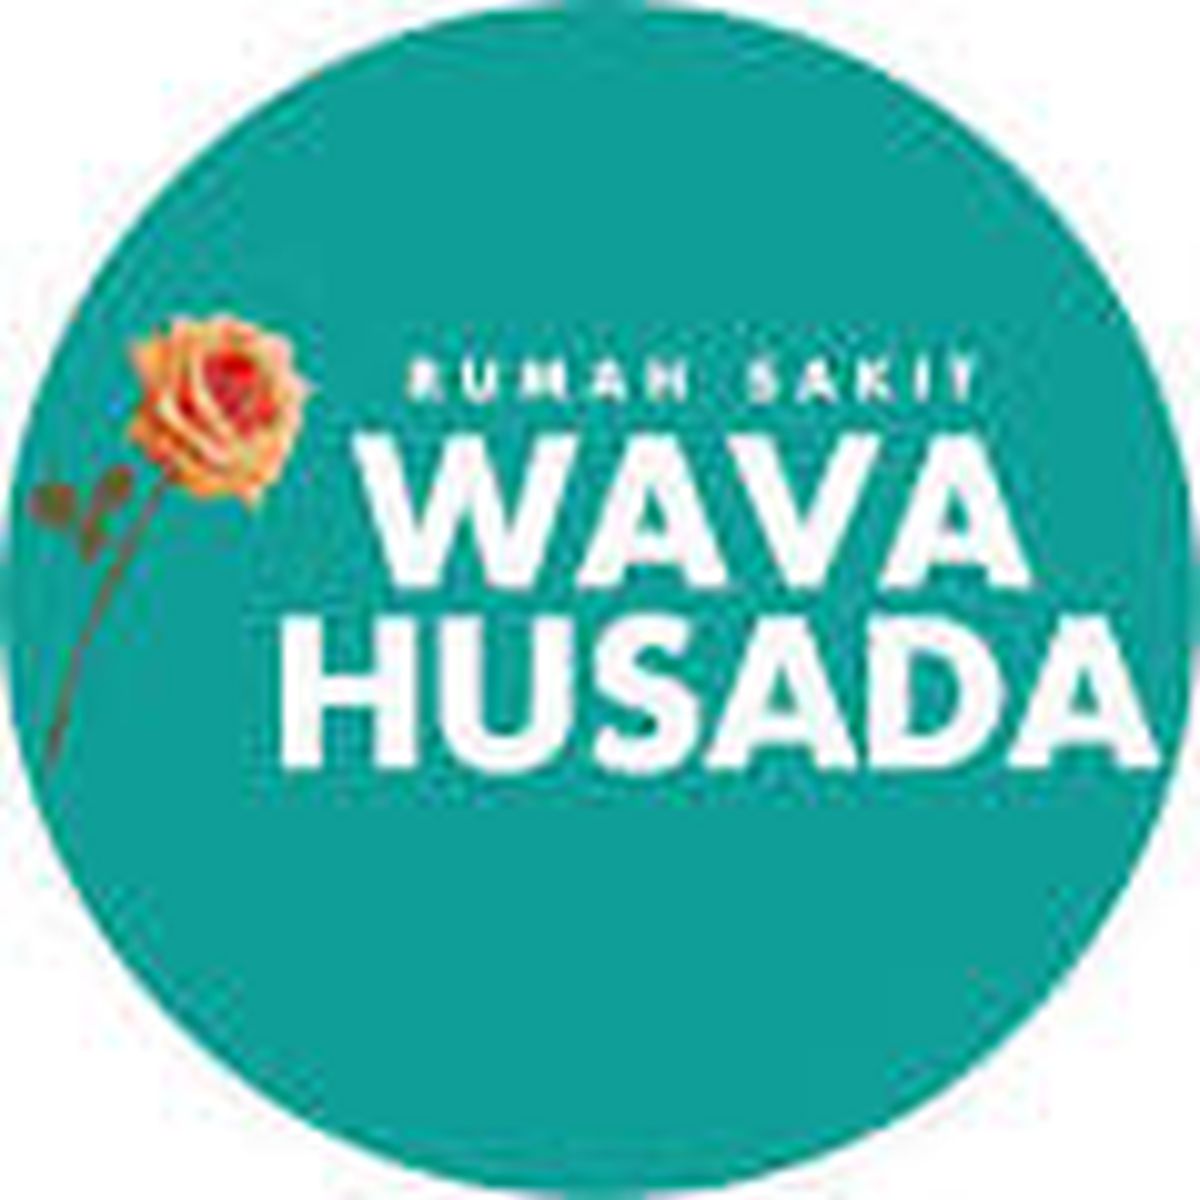  Rumah Sakit  Wava Husada  is hiring a Asisten Apoteker in 